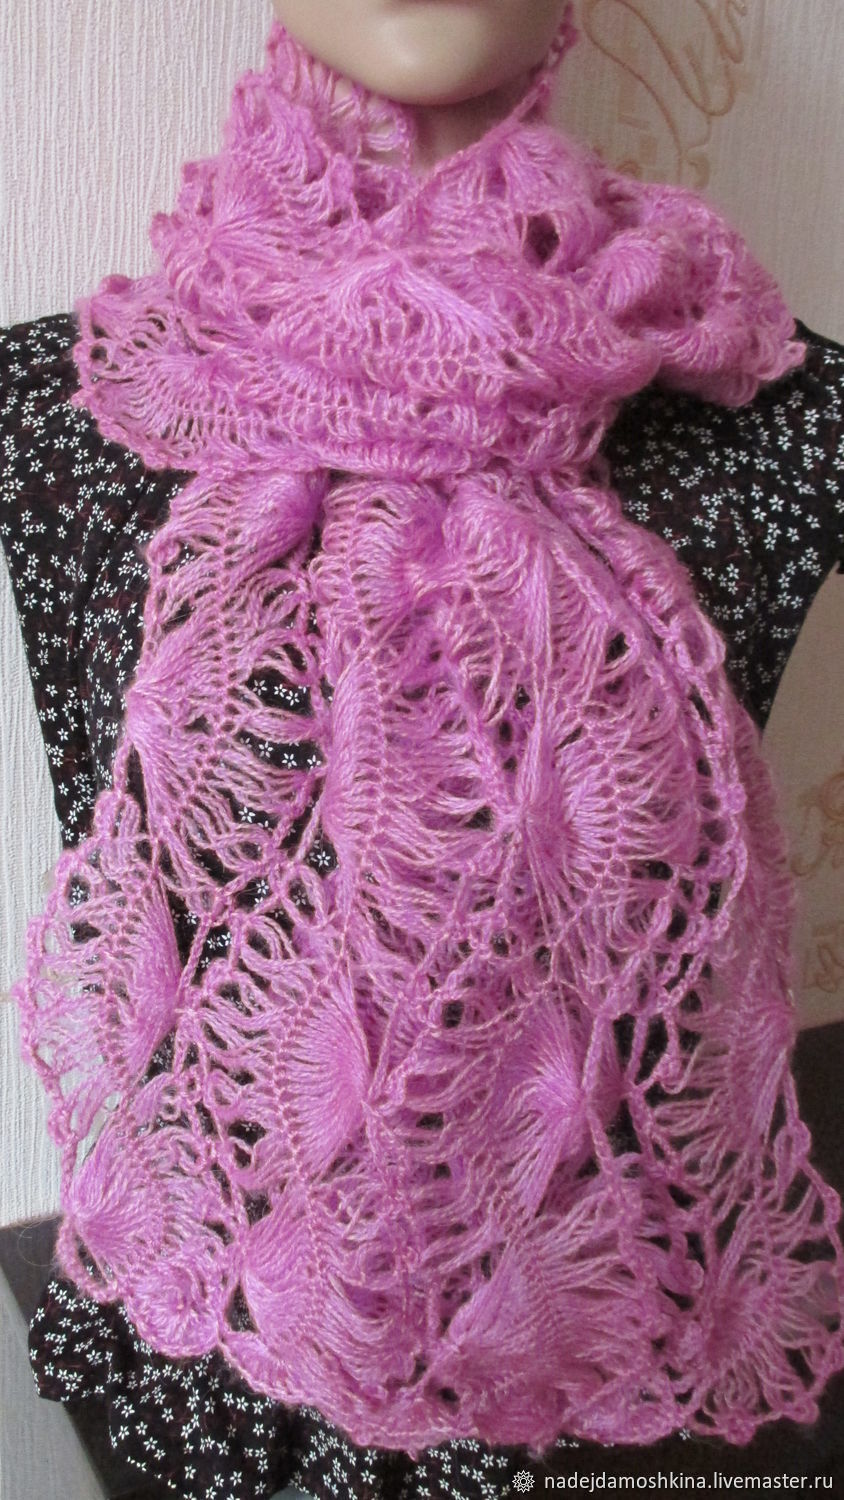 Ажурный шарф из мохера спицами схемы